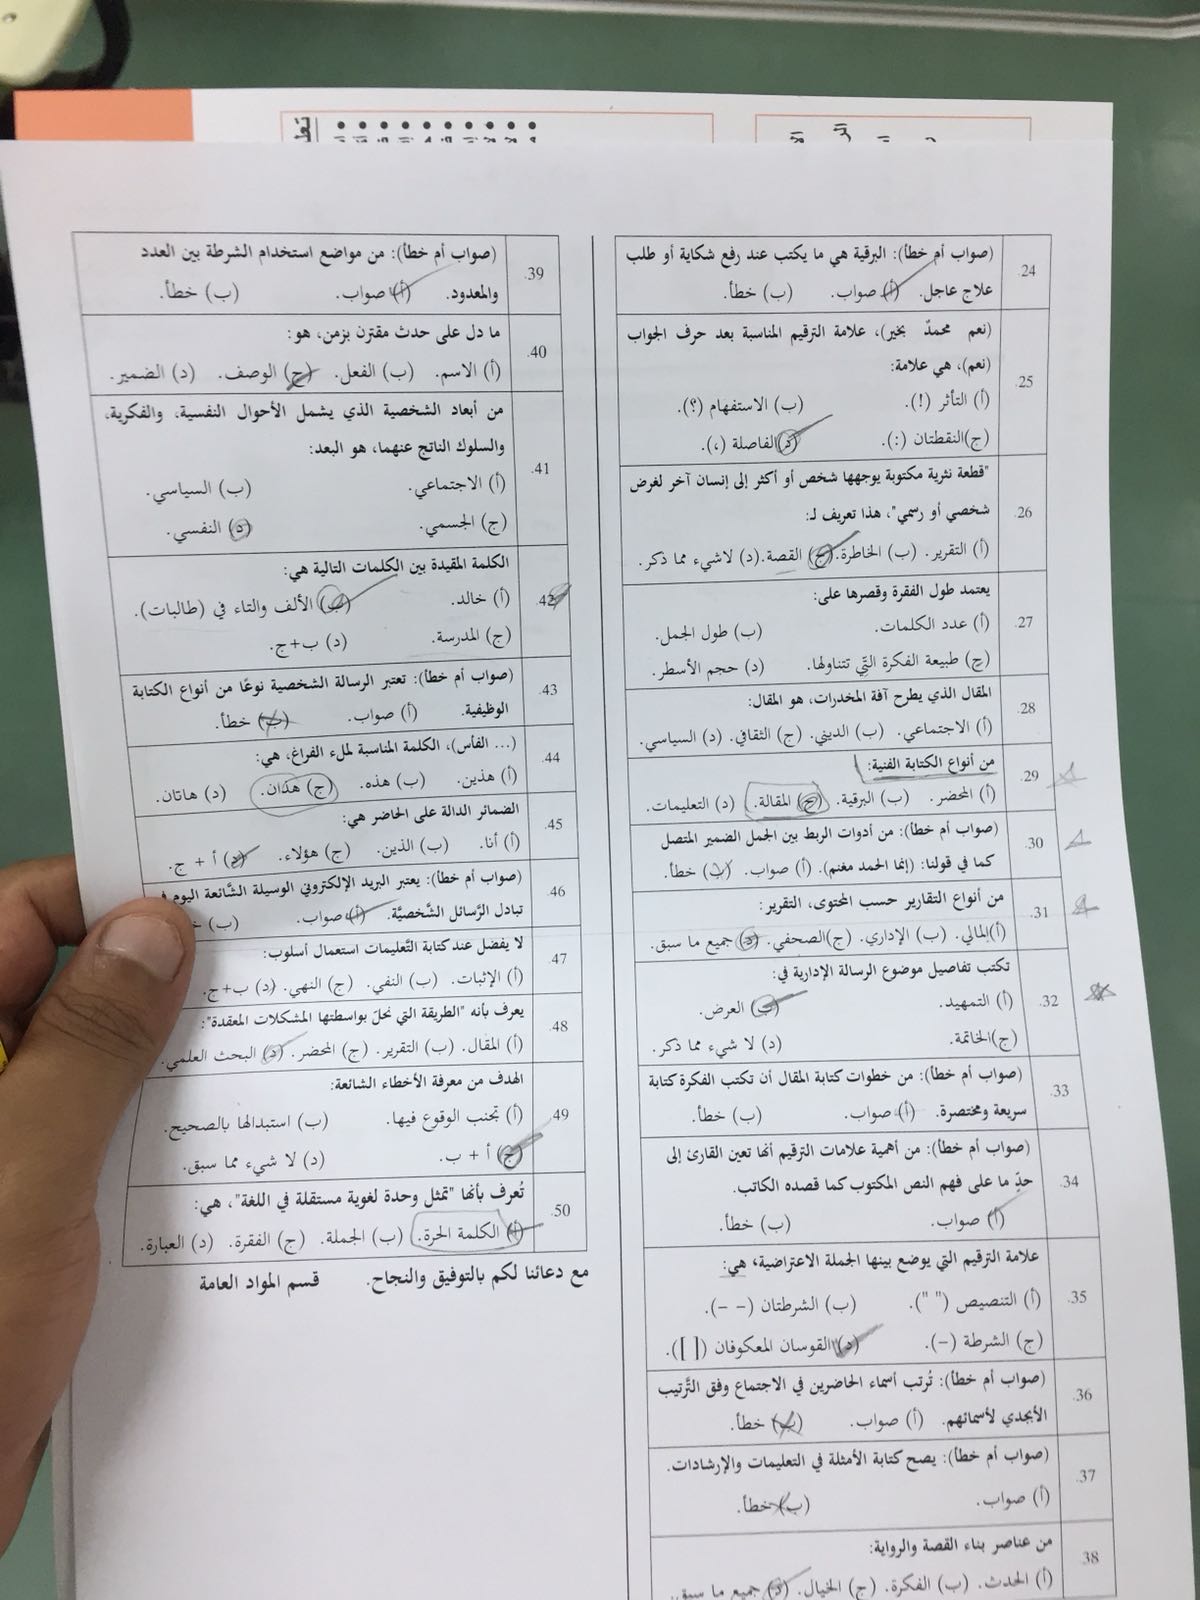 اختبار اللغة العربية 201 الفصل الثاني لعام 1438/1439 انتساب نموذج ب